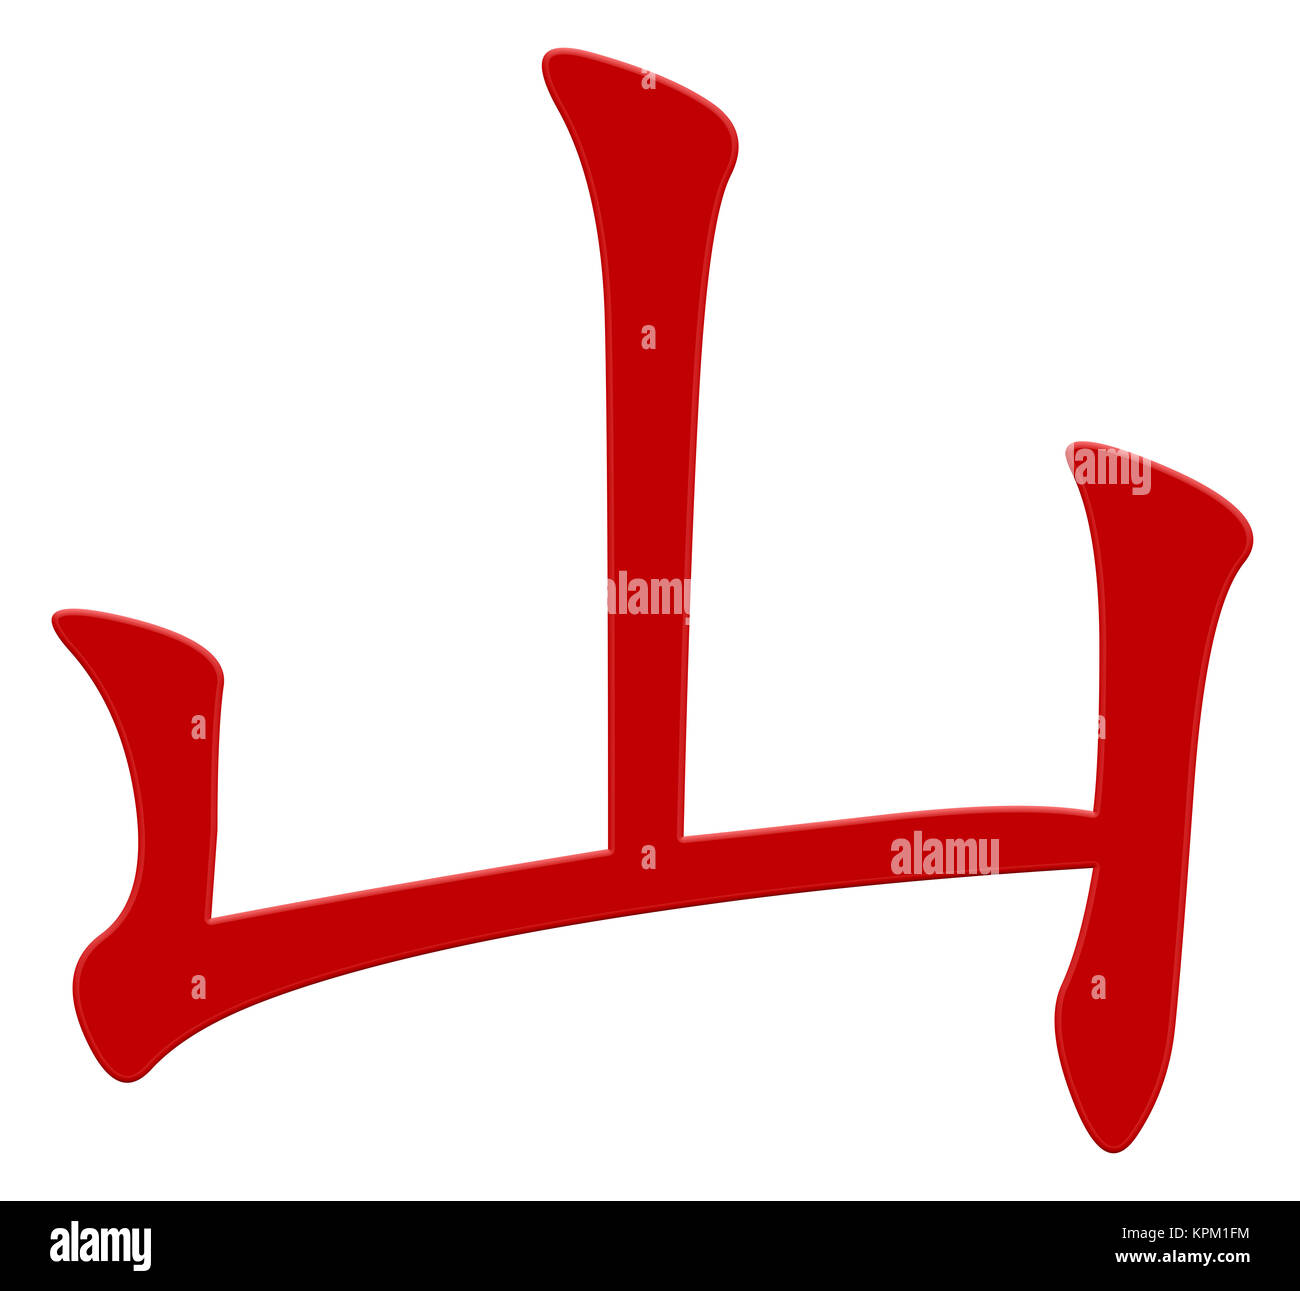 Chinesische Zeichen für Berg Stockfoto